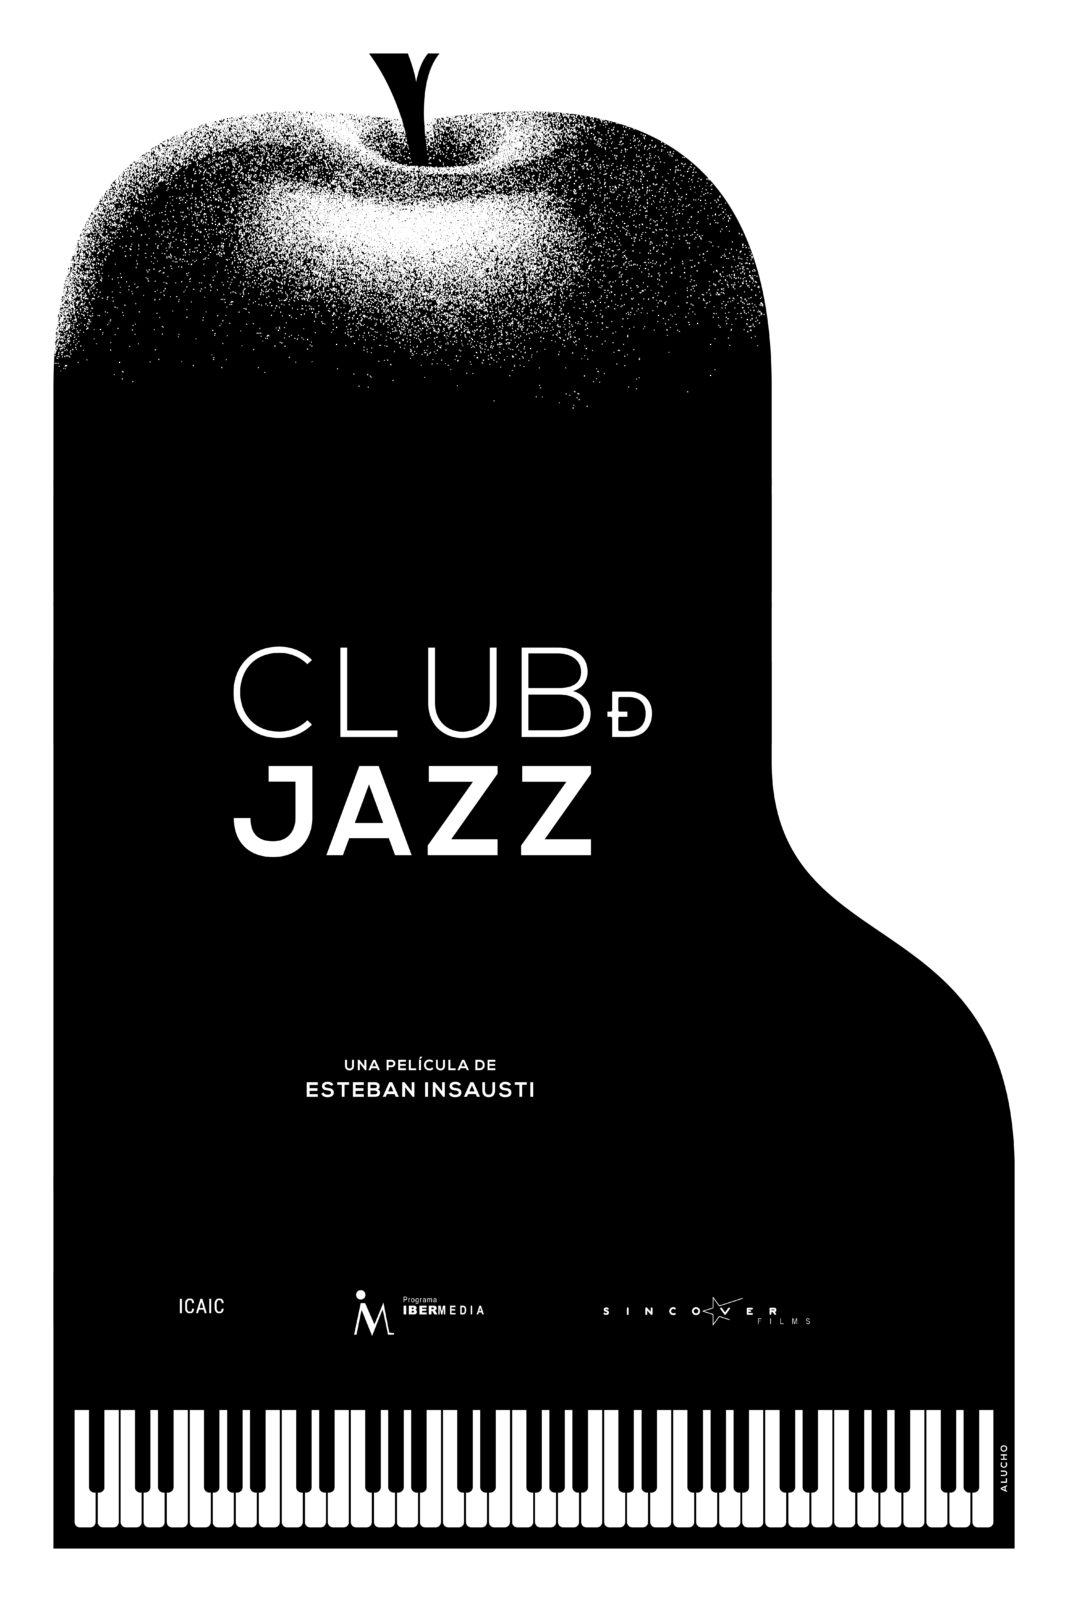 Club de Jazz, cine cubano sobre músicos y envidias